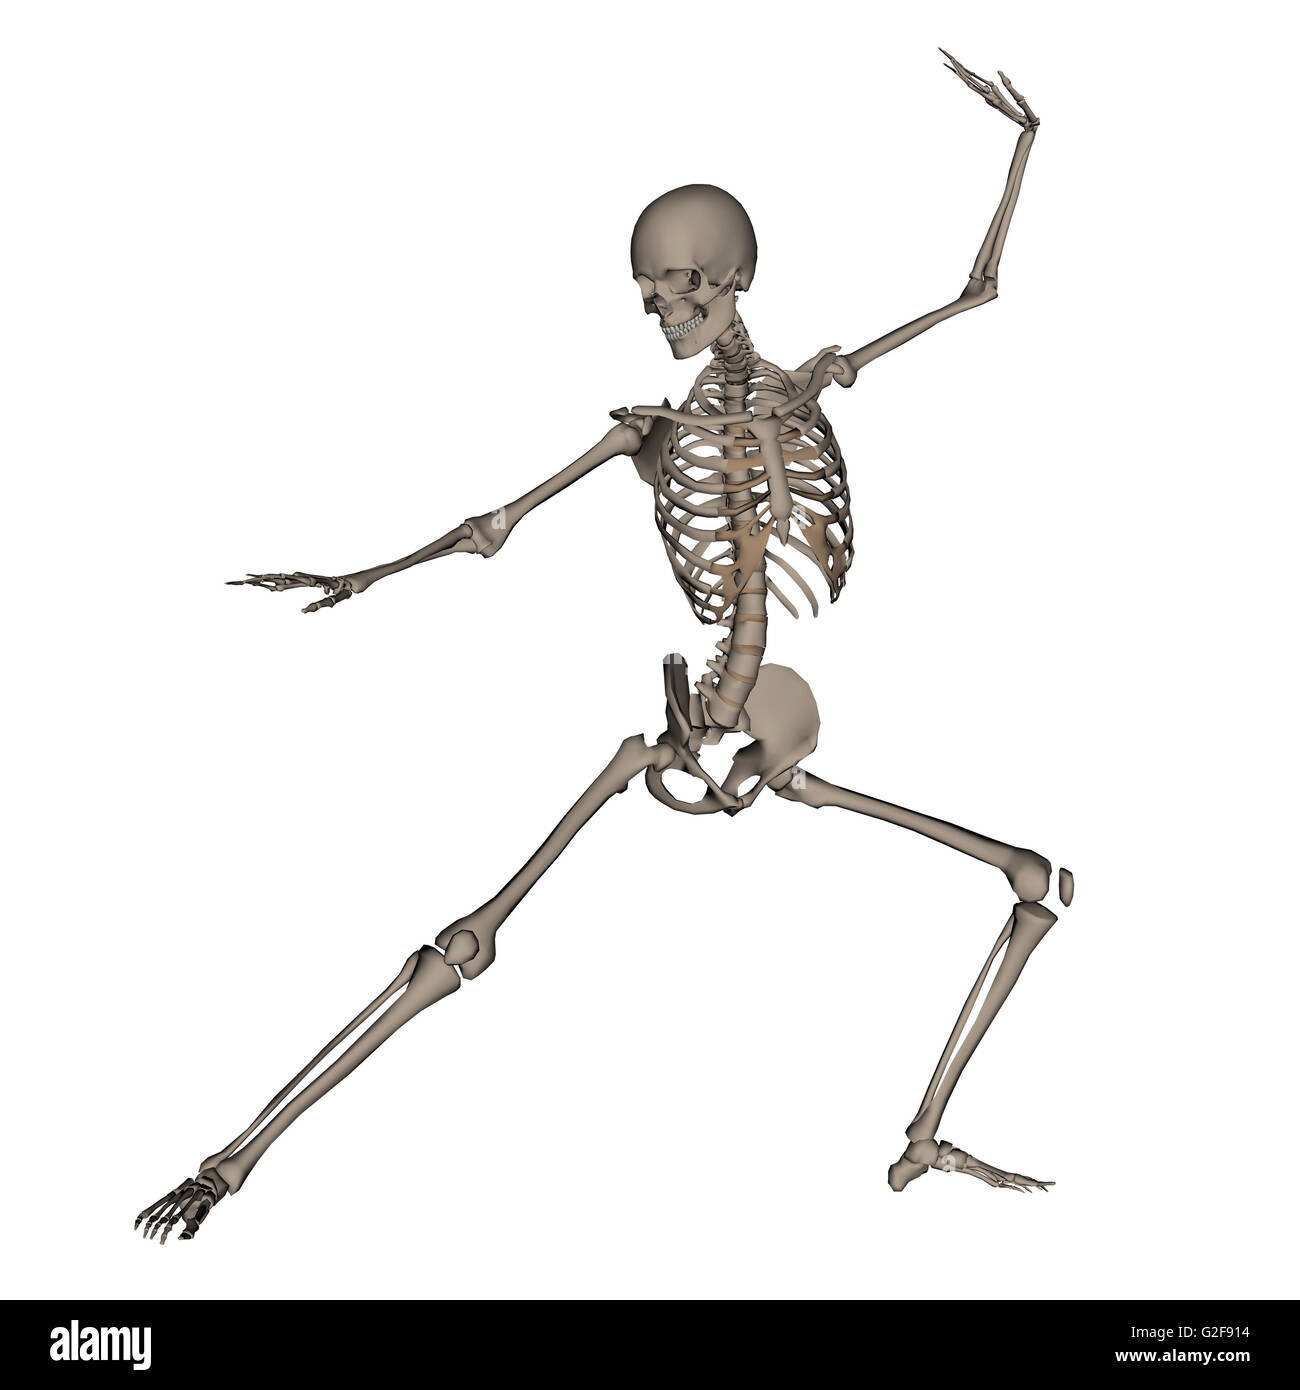 Vista anteriore dello scheletro umano in atteggiamento di combattimento, isolato su sfondo bianco. Foto Stock